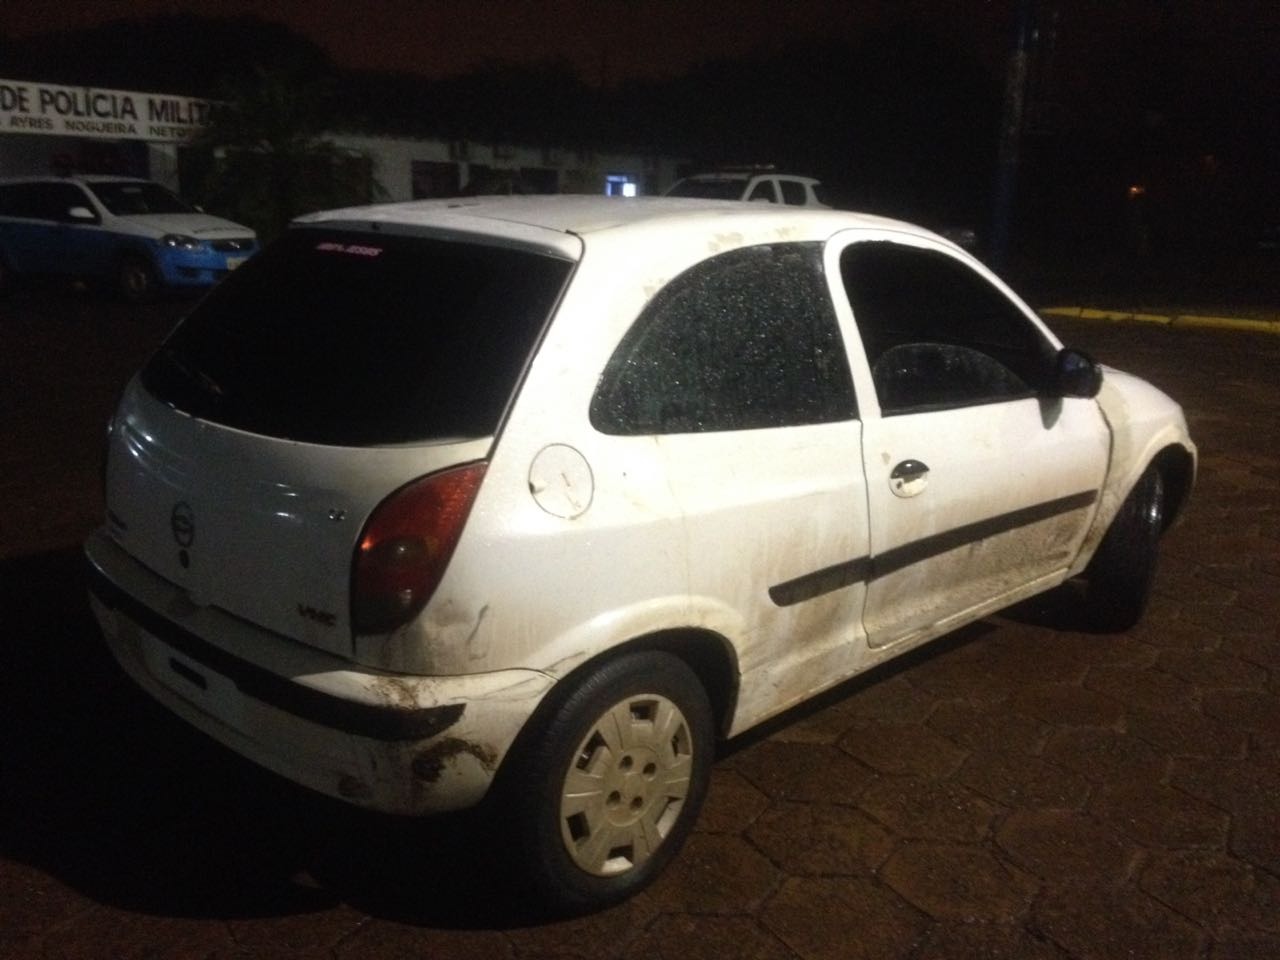 PM de Ponta Porã recupera veículo roubado no Paraná